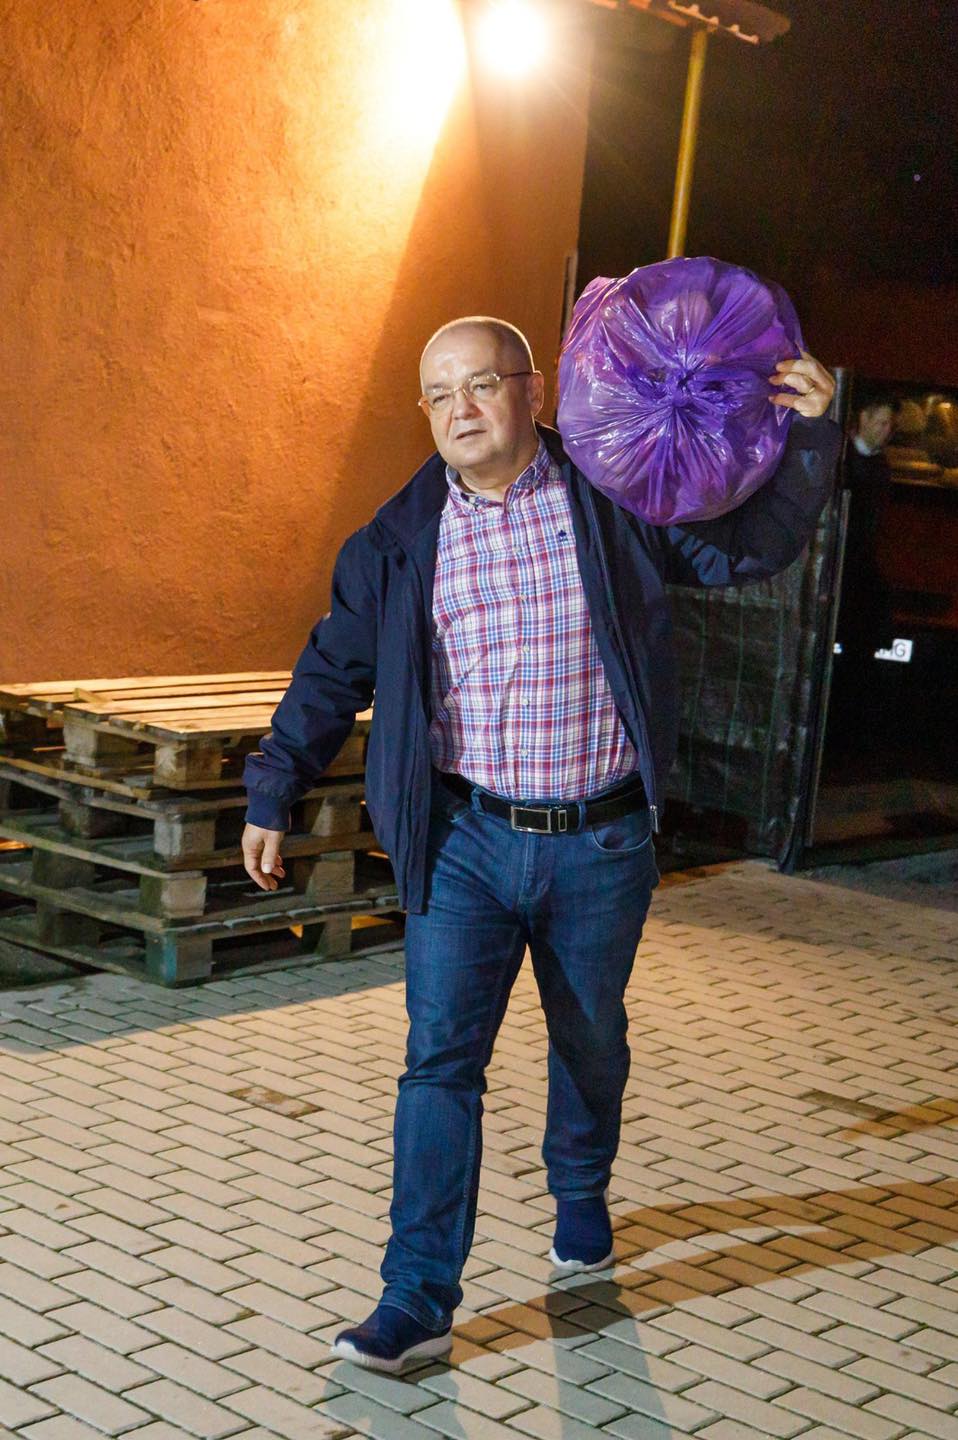 Foto Cluj. Primarul Emil Boc a cărat în spinare legume cu sacul pentru oamenii nevoiași 1